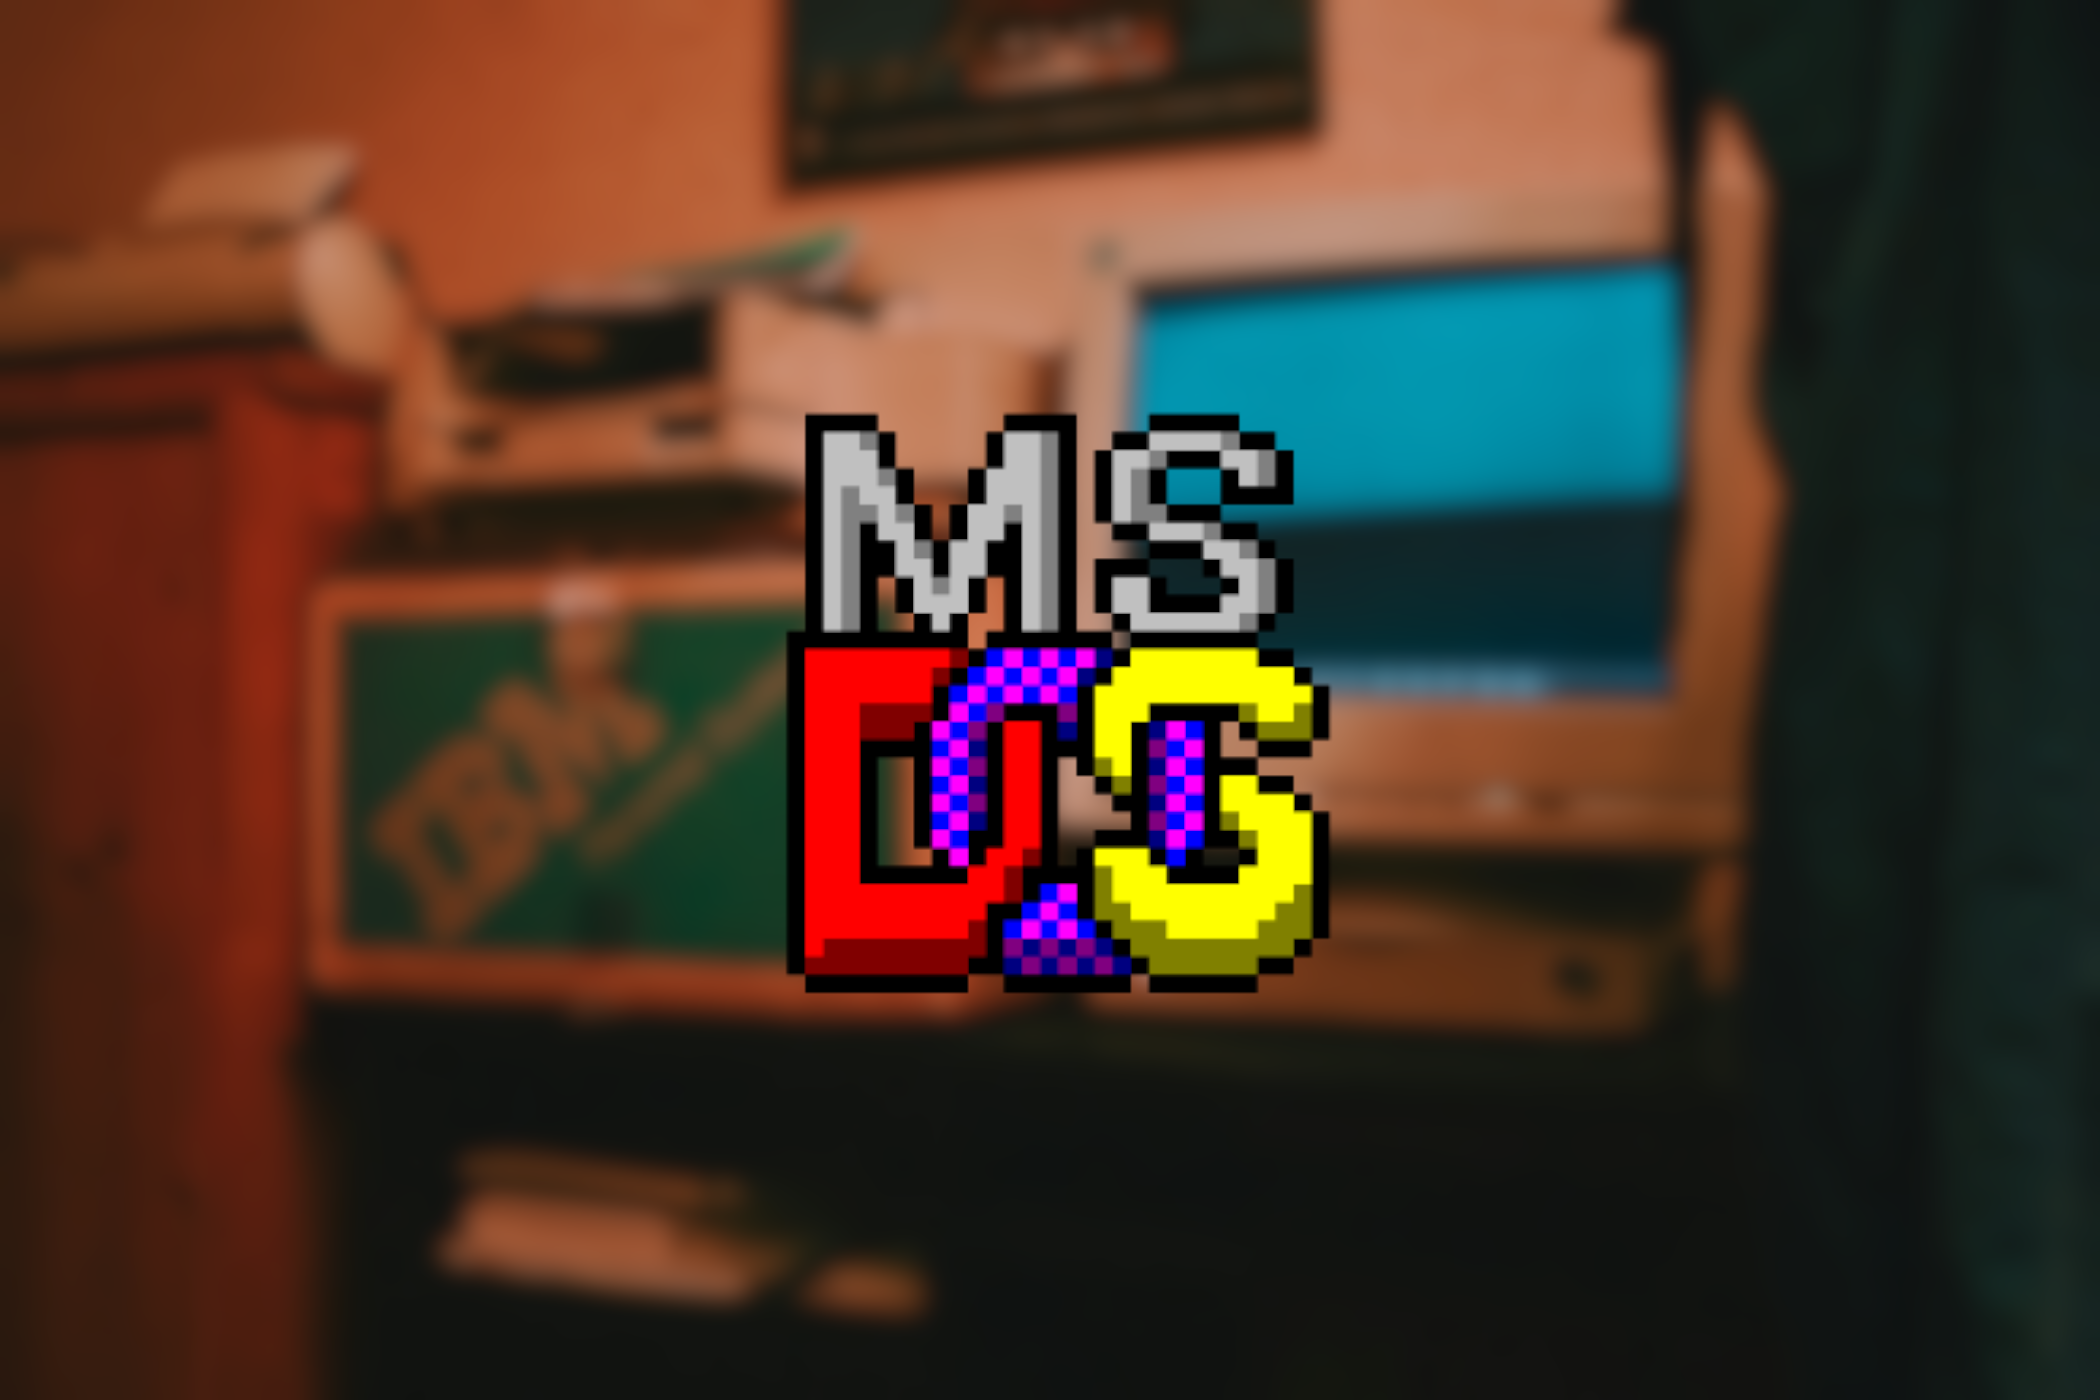 The MS-DOS logo